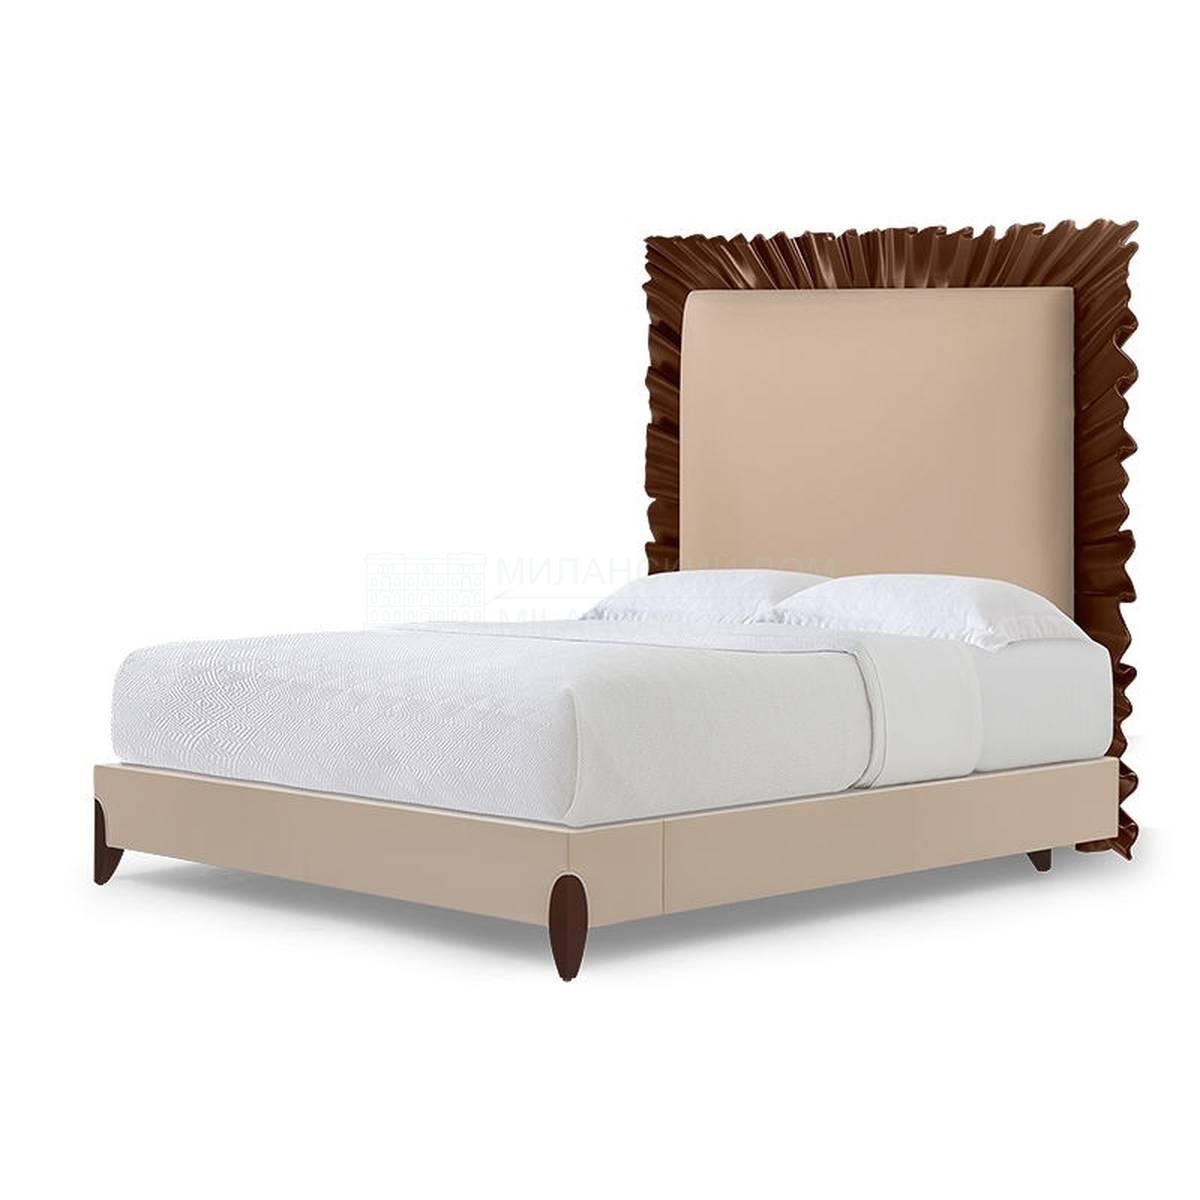 Кровать с мягким изголовьем Ruffle bed из США фабрики CHRISTOPHER GUY